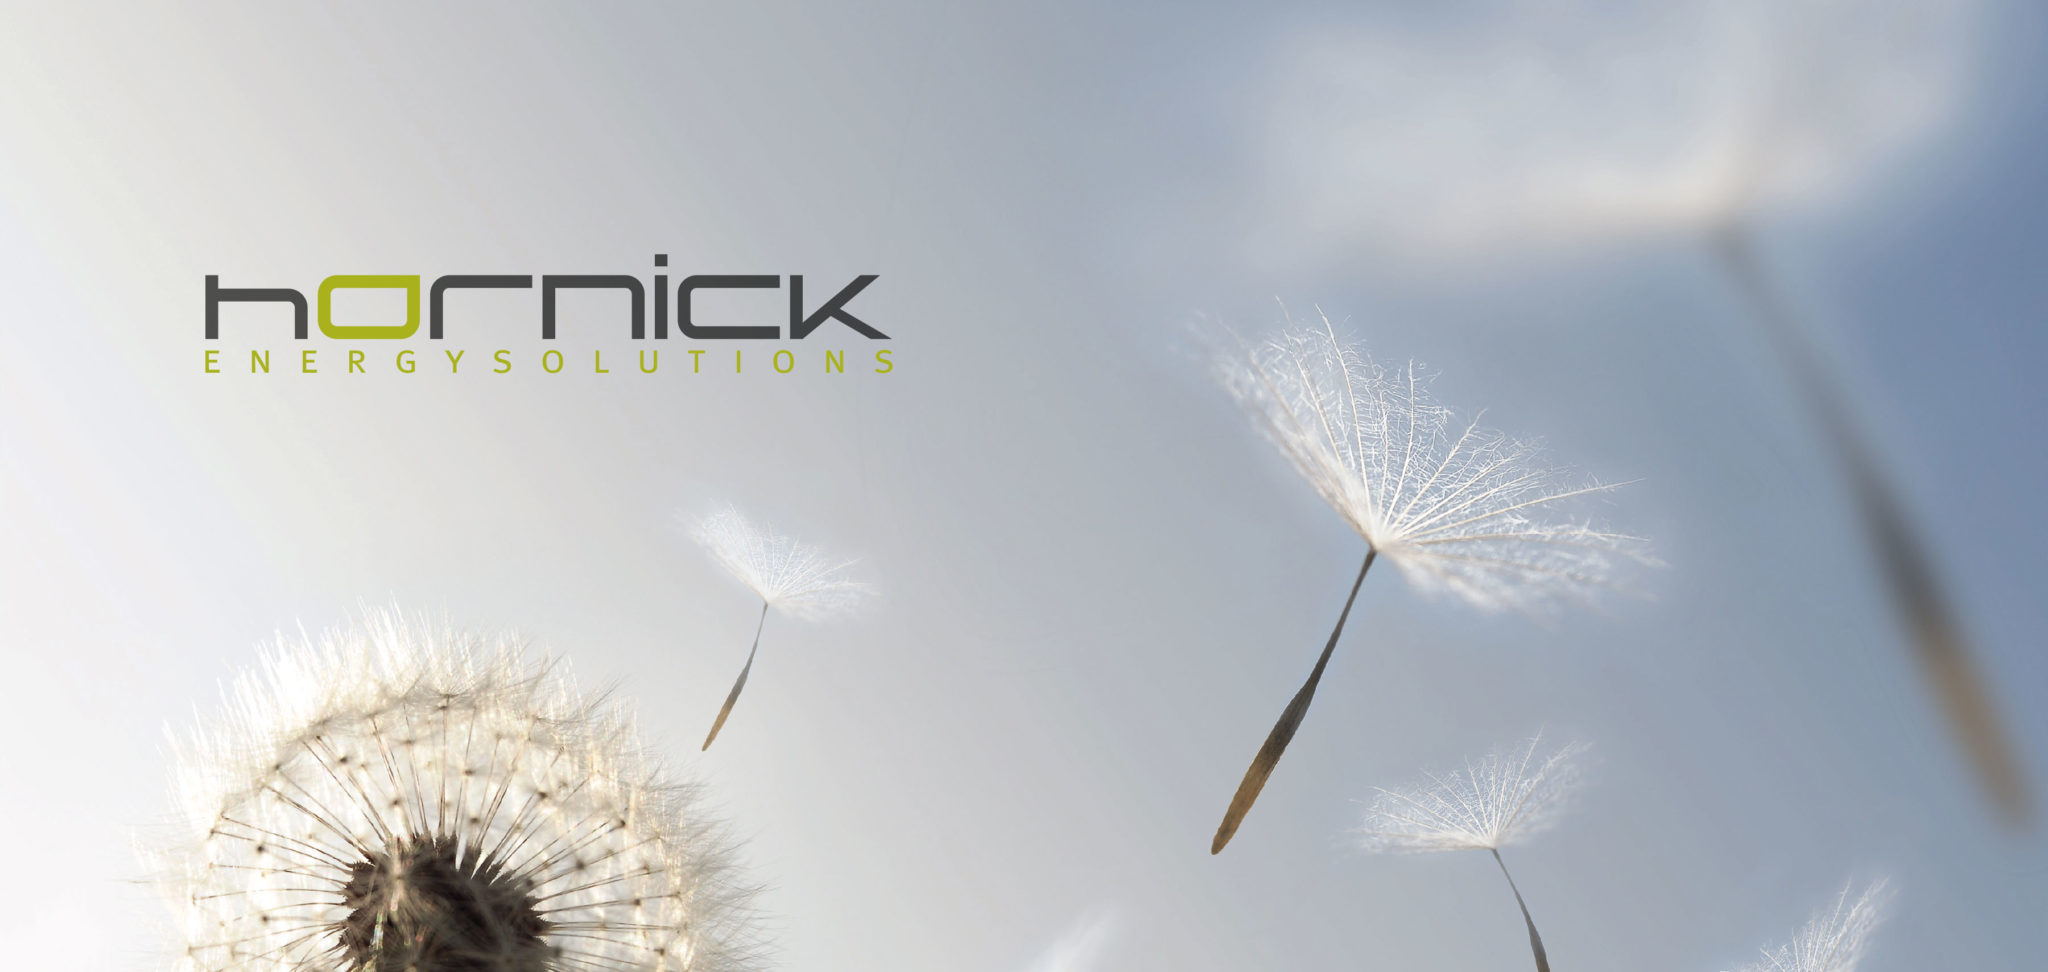 hornick_Logo02